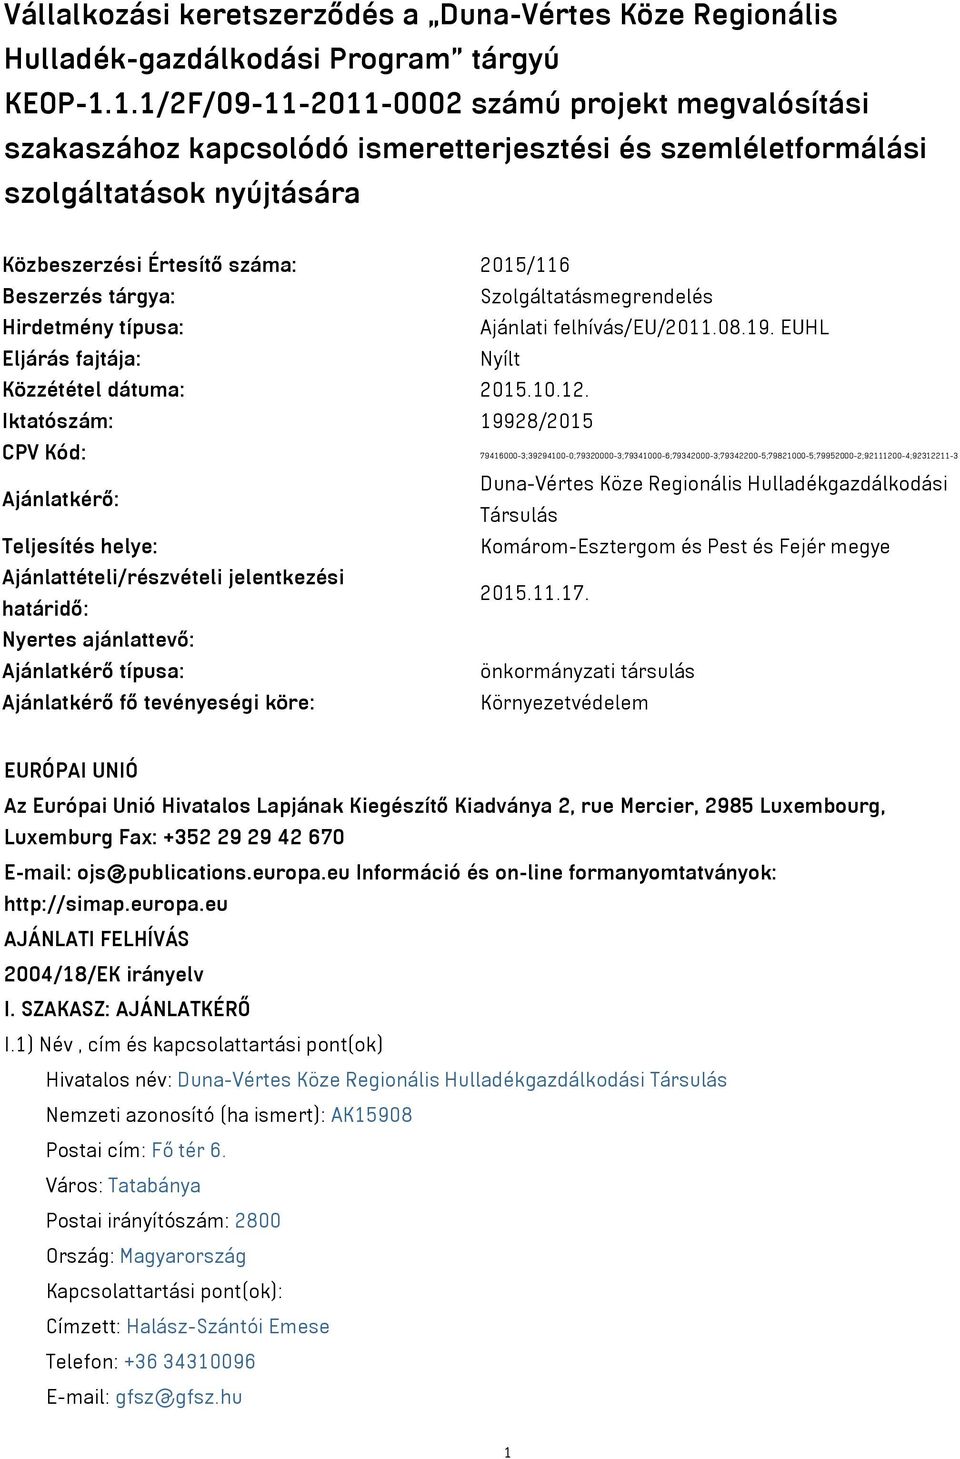 Szolgáltatásmegrendelés Hirdetmény típusa: Ajánlati felhívás/eu/2011.08.19. EUHL Eljárás fajtája: Nyílt Közzététel dátuma: 2015.10.12.